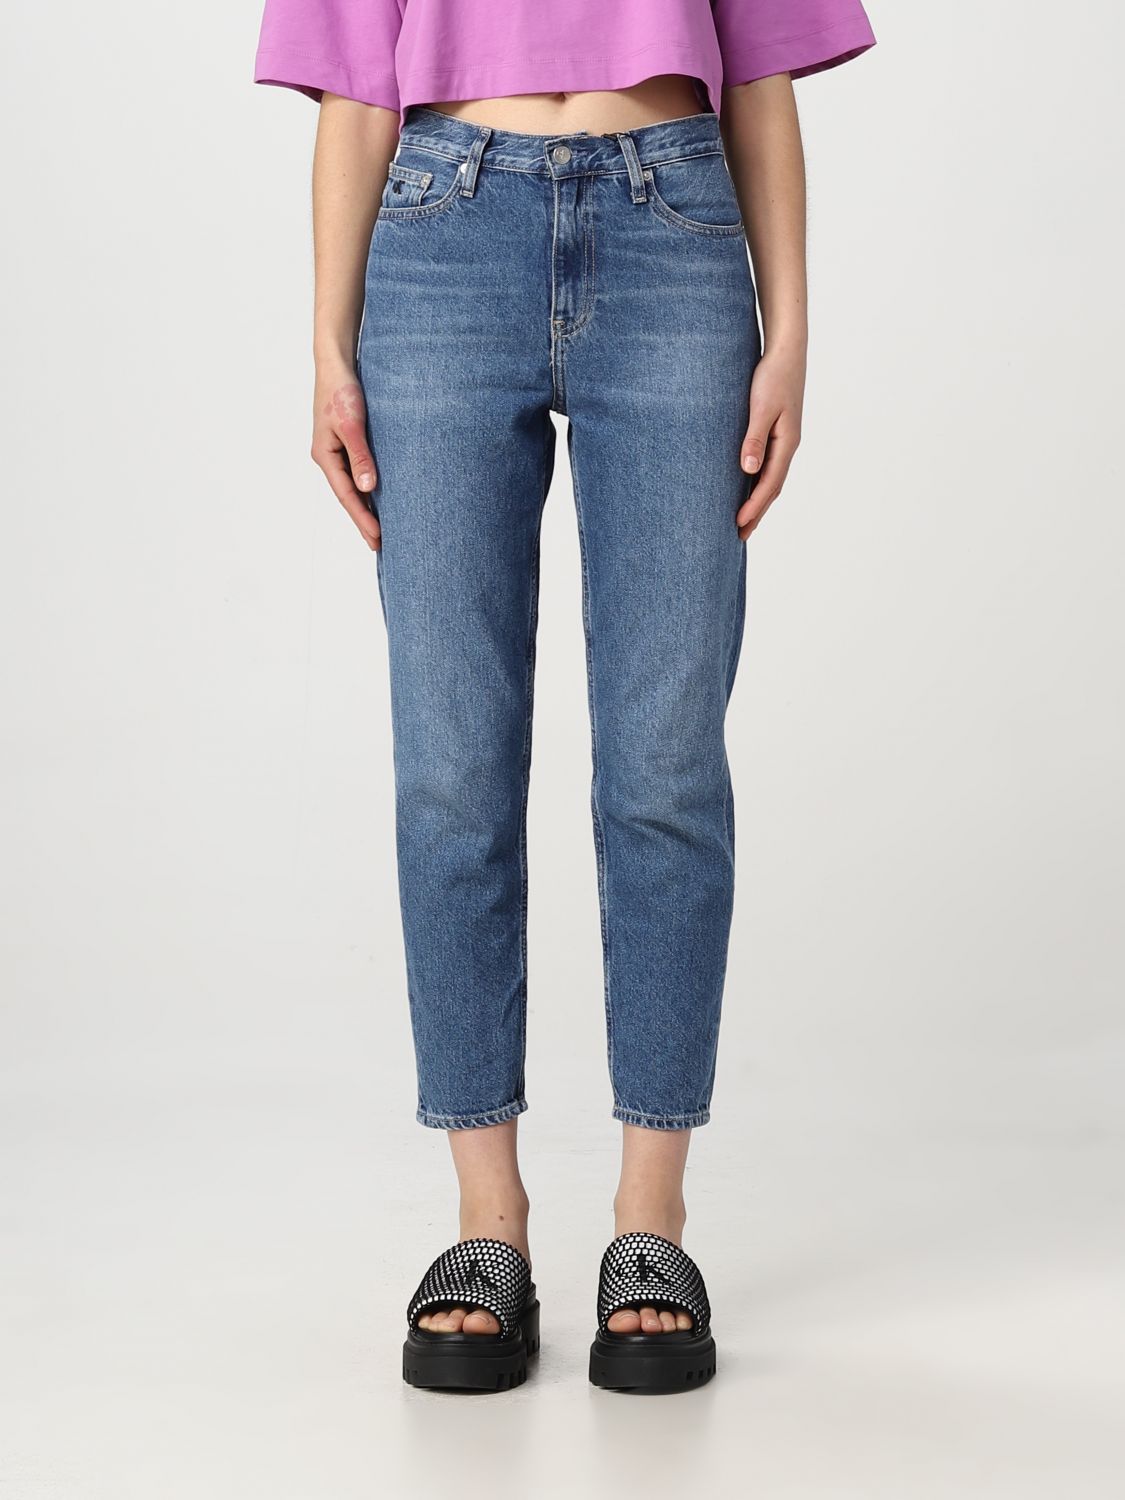 rit Technologie vergeten CALVIN KLEIN JEANS: jeans for woman - Blue | Calvin Klein Jeans jeans  J20J220194 online on GIGLIO.COM